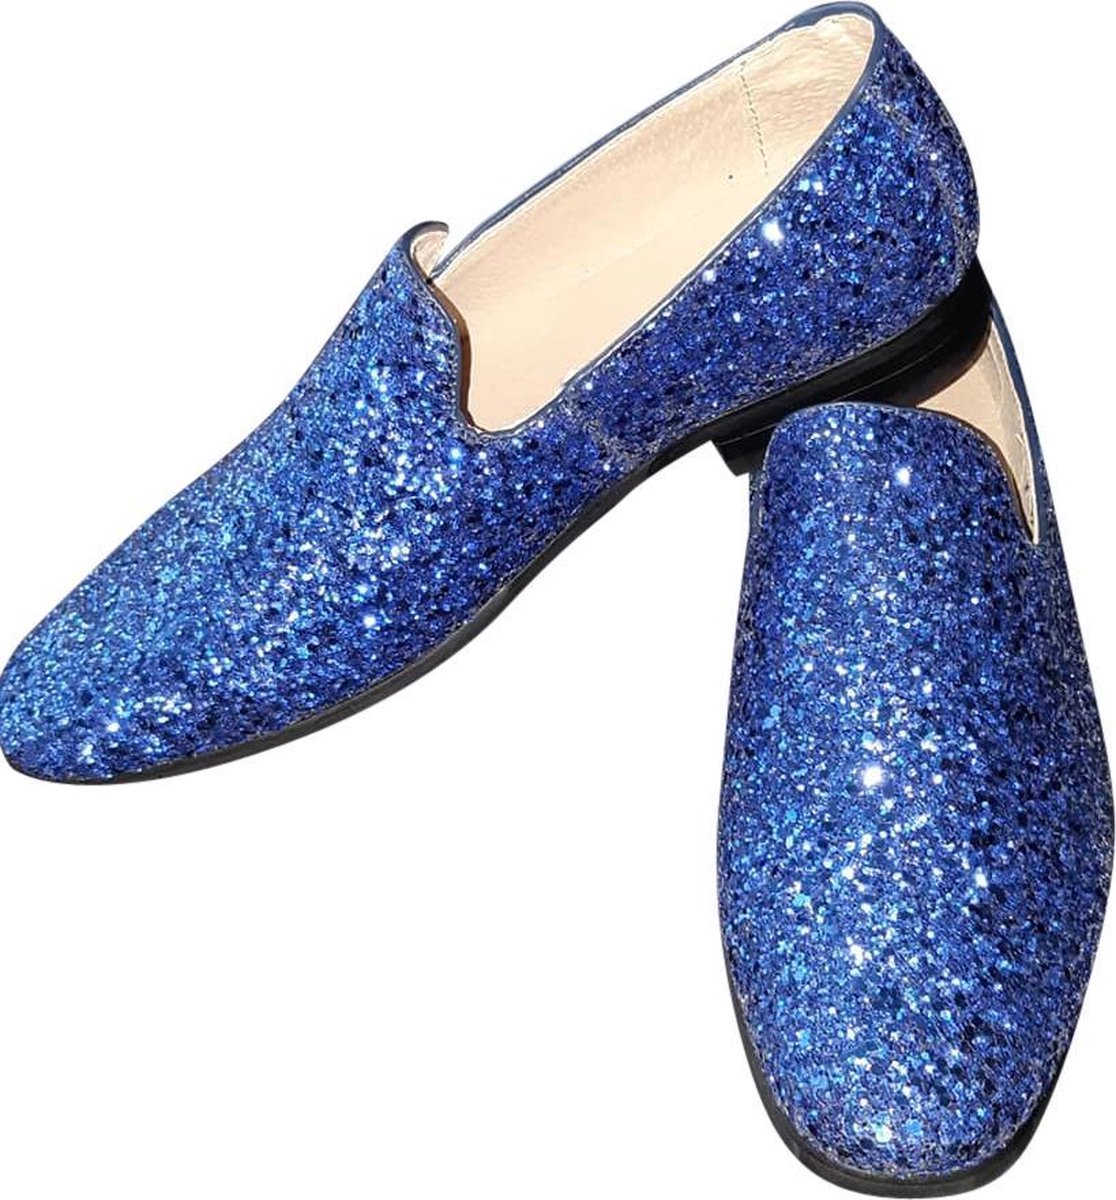 Heren - Glitter schoen - Kobalt blauw - Maat 42 - Disco